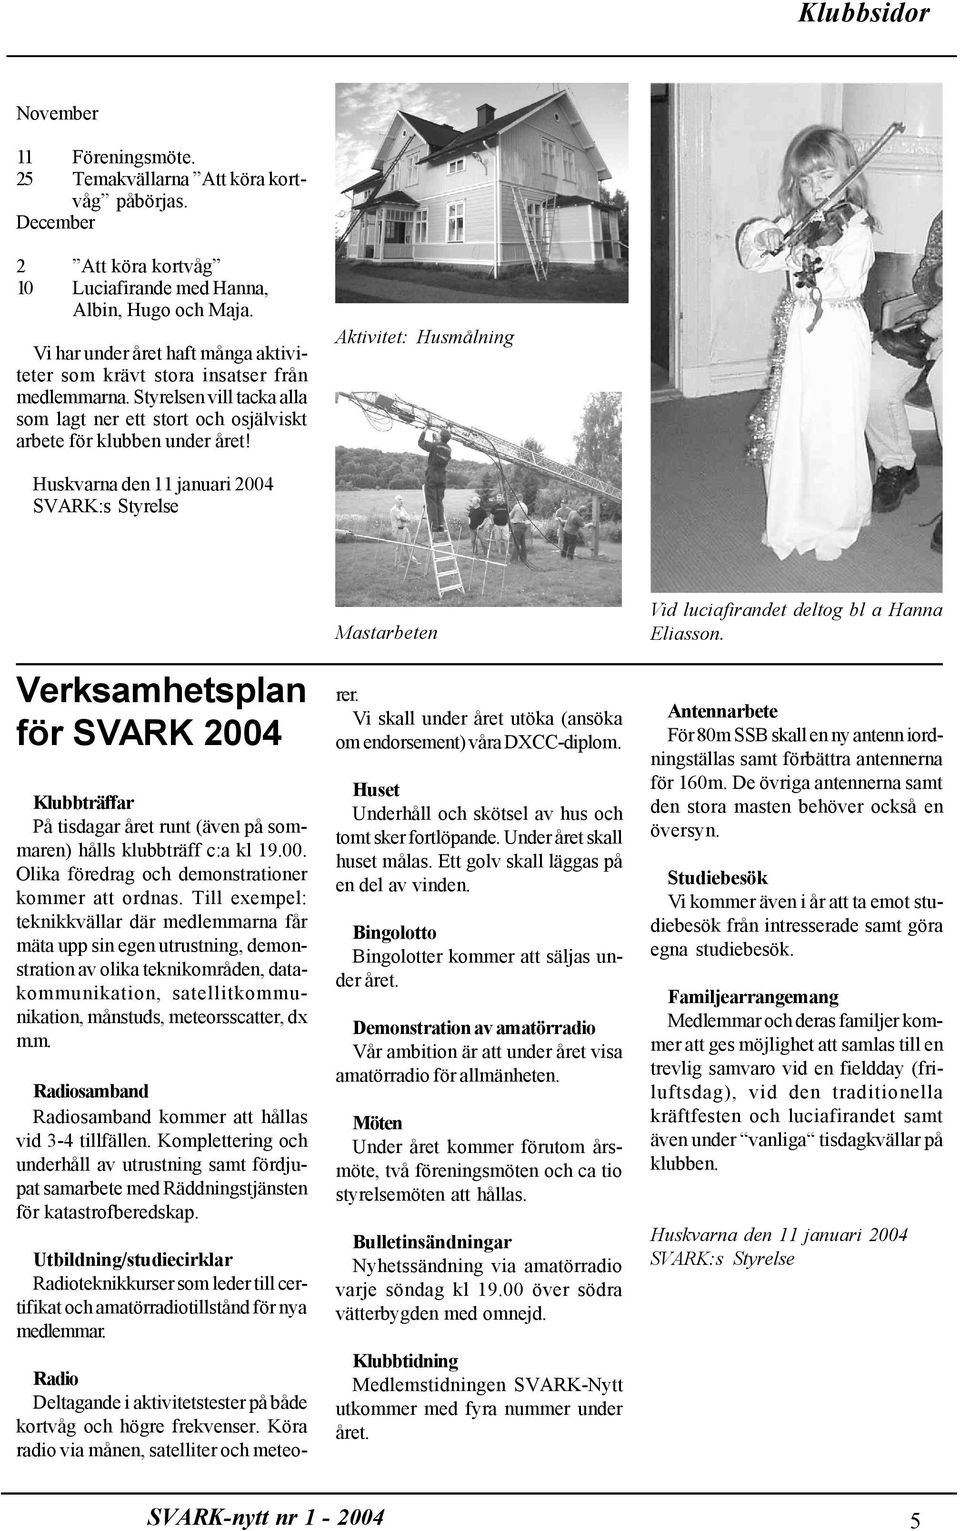 Aktivitet: Husmålning Huskvarna den 11 januari 2004 SVARK:s Styrelse Verksamhetsplan för SVARK 2004 Klubbträffar På tisdagar året runt (även på sommaren) hålls klubbträff c:a kl 19.00. Olika föredrag och demonstrationer kommer att ordnas.